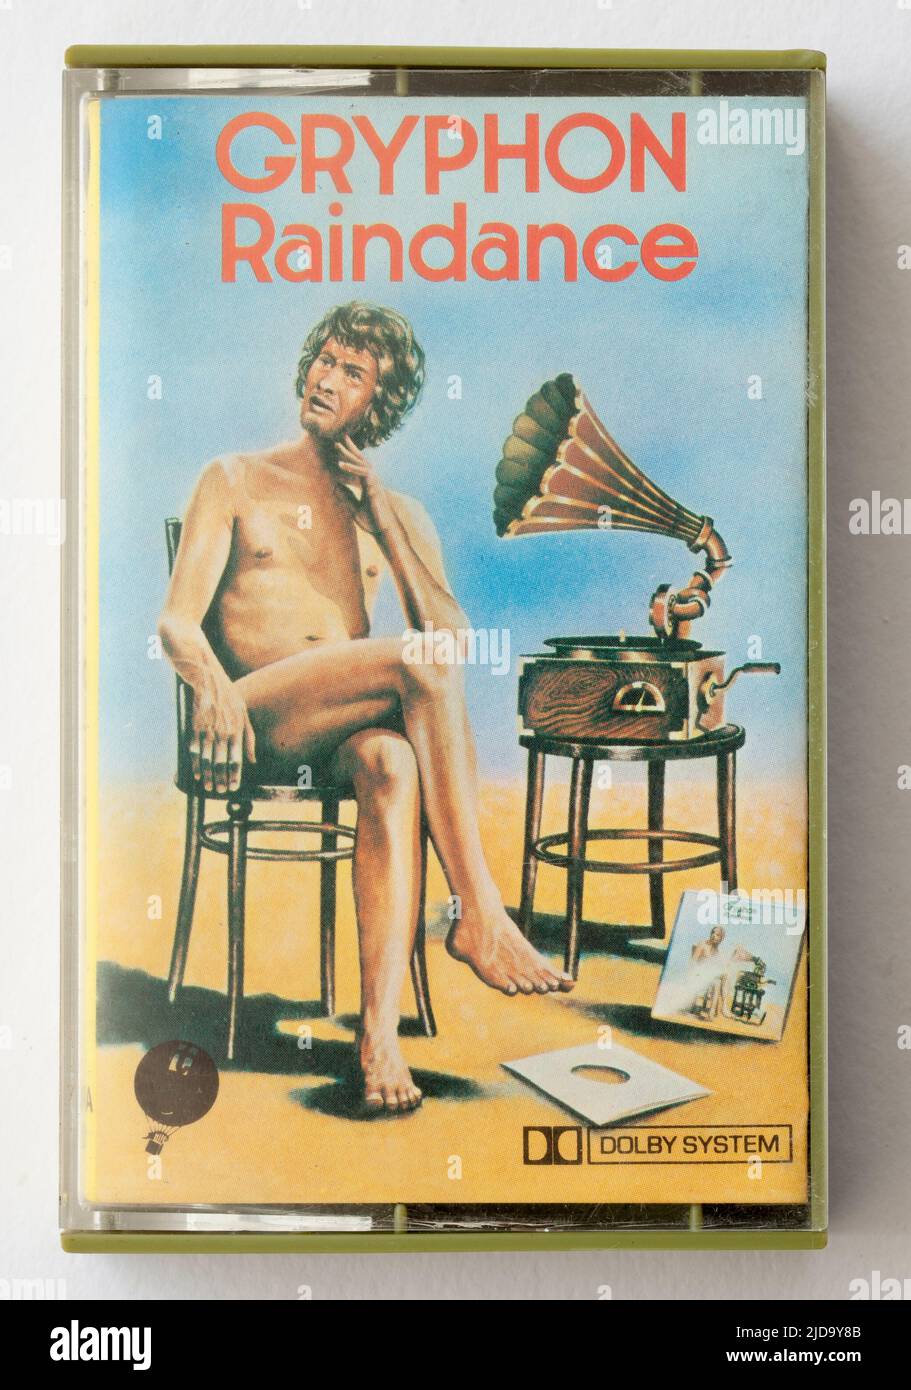 1970s Music Cassette Raindance de Gryphon Foto de stock